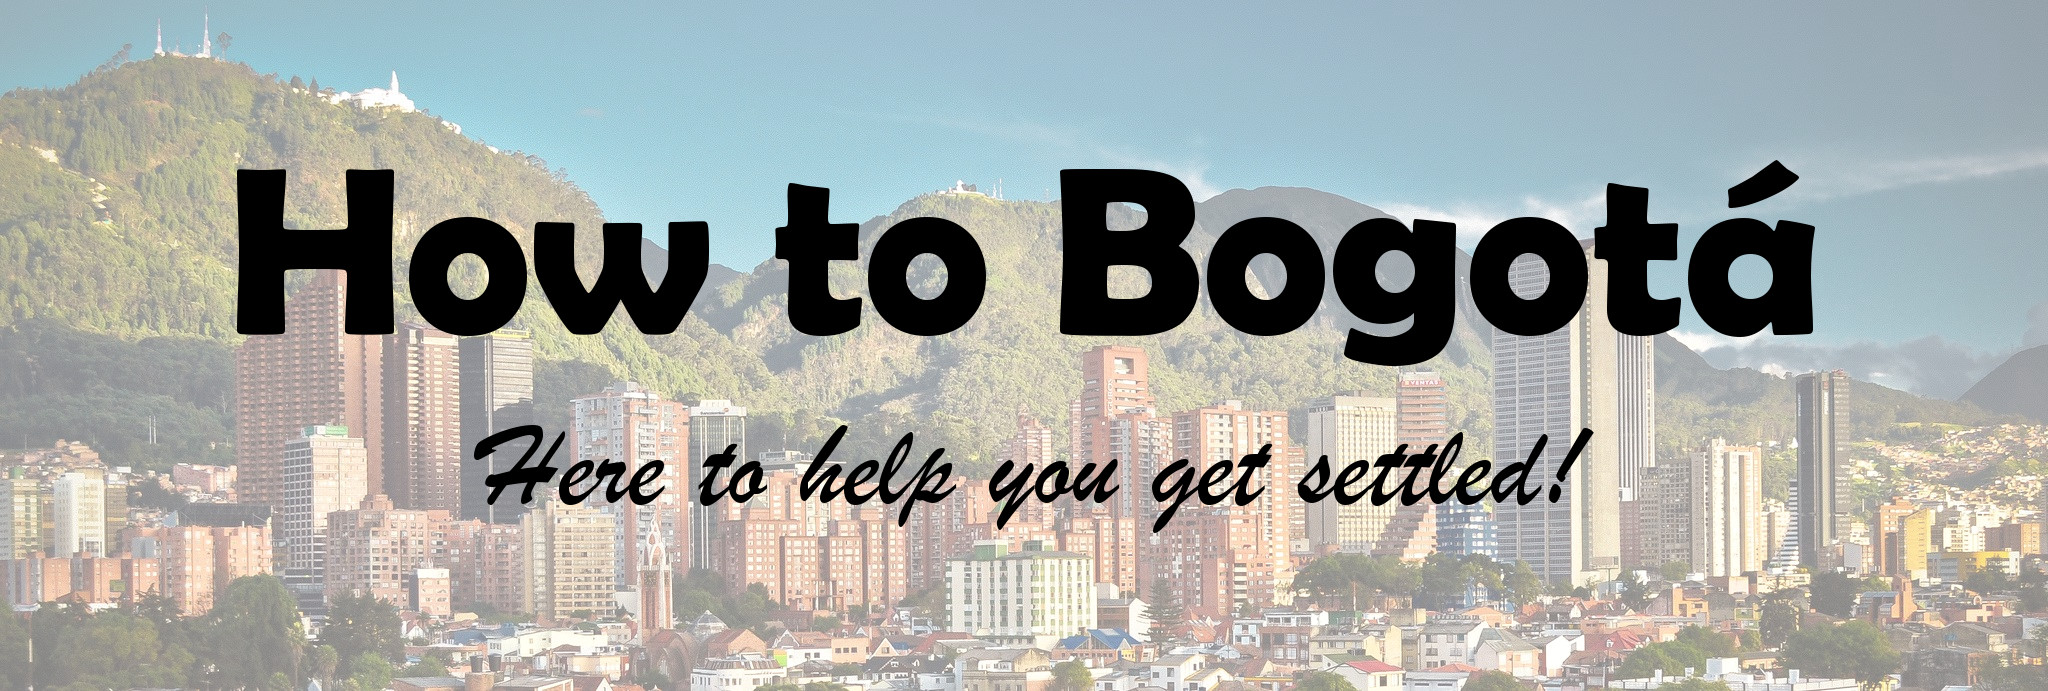 How to Bogotá